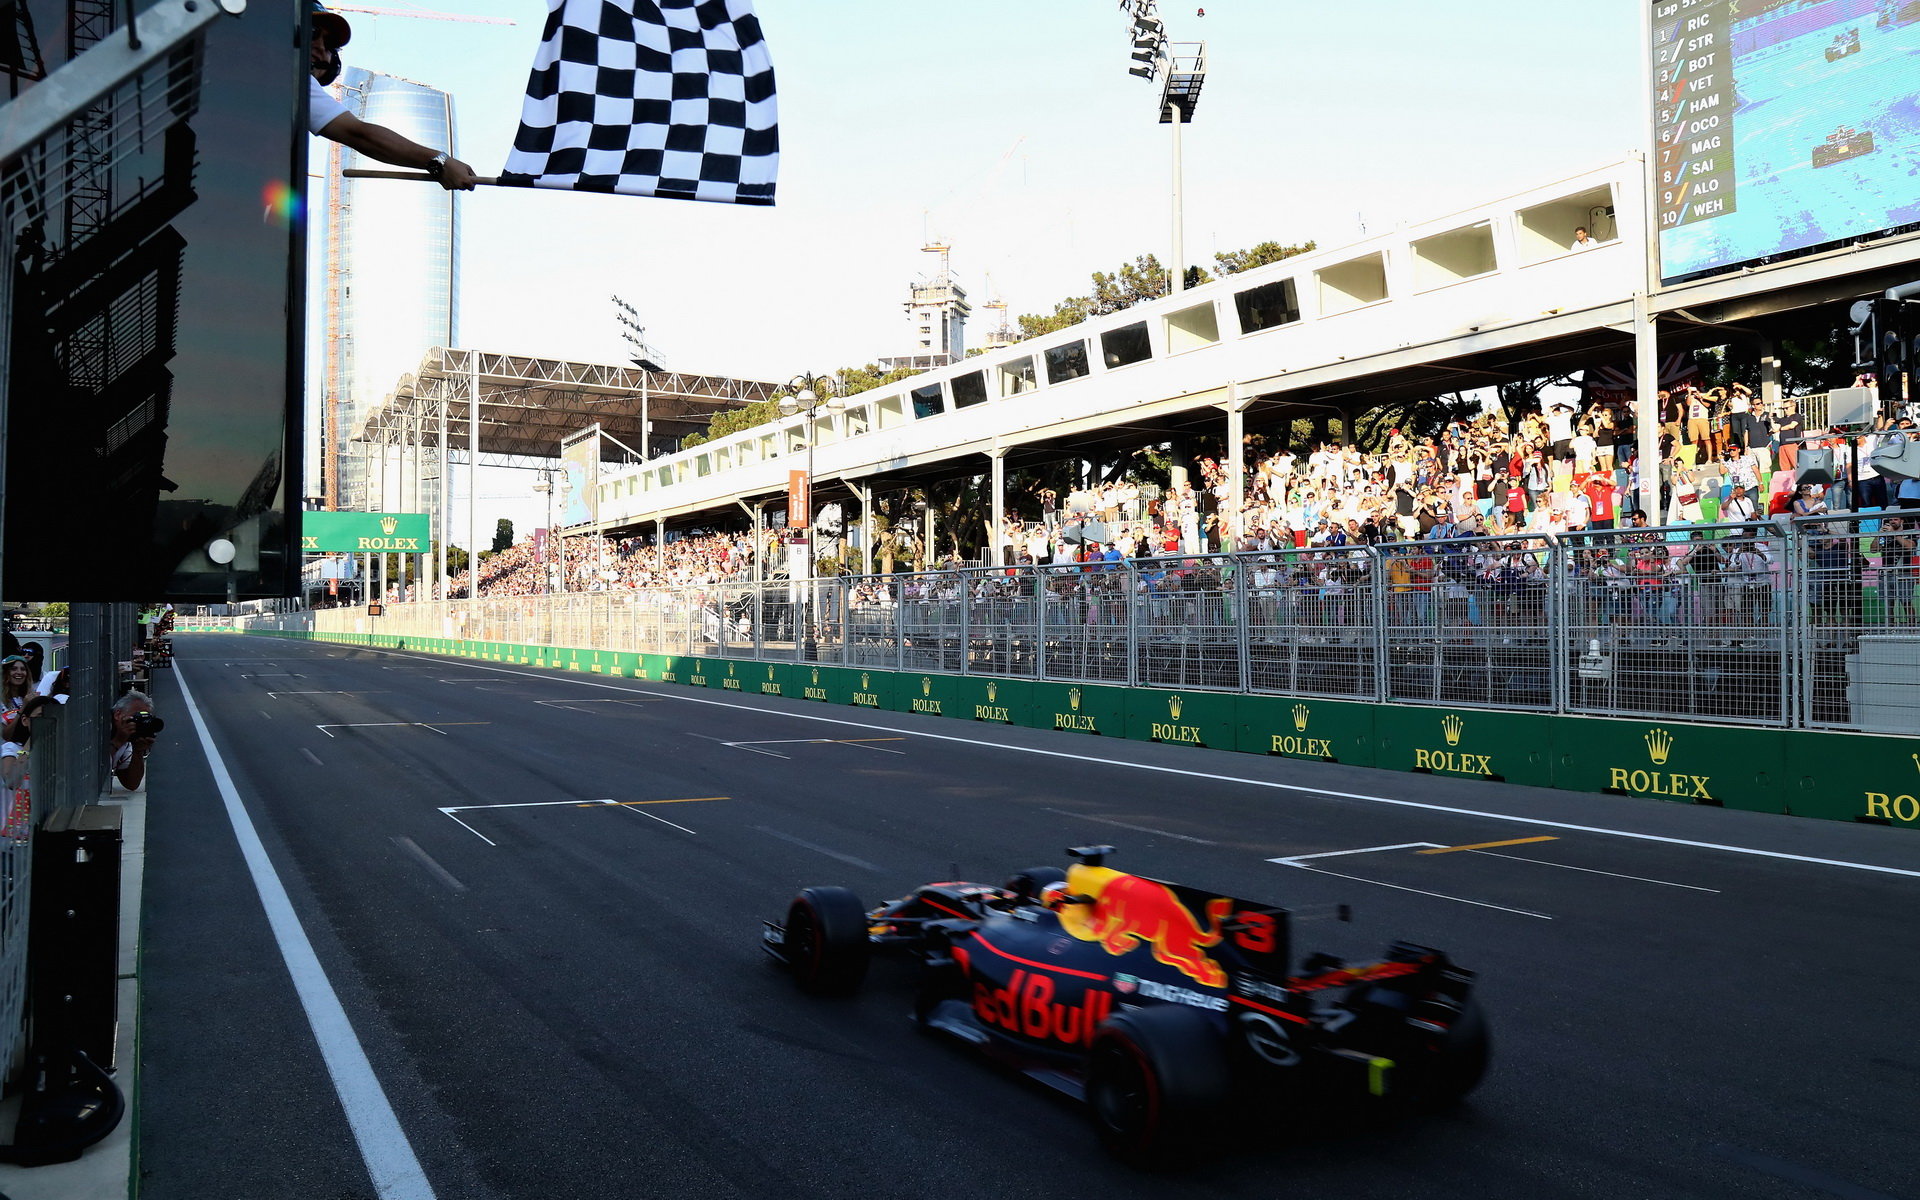 Daniel Ricciardo po spletitém boji, vítězí v závodě v Baku